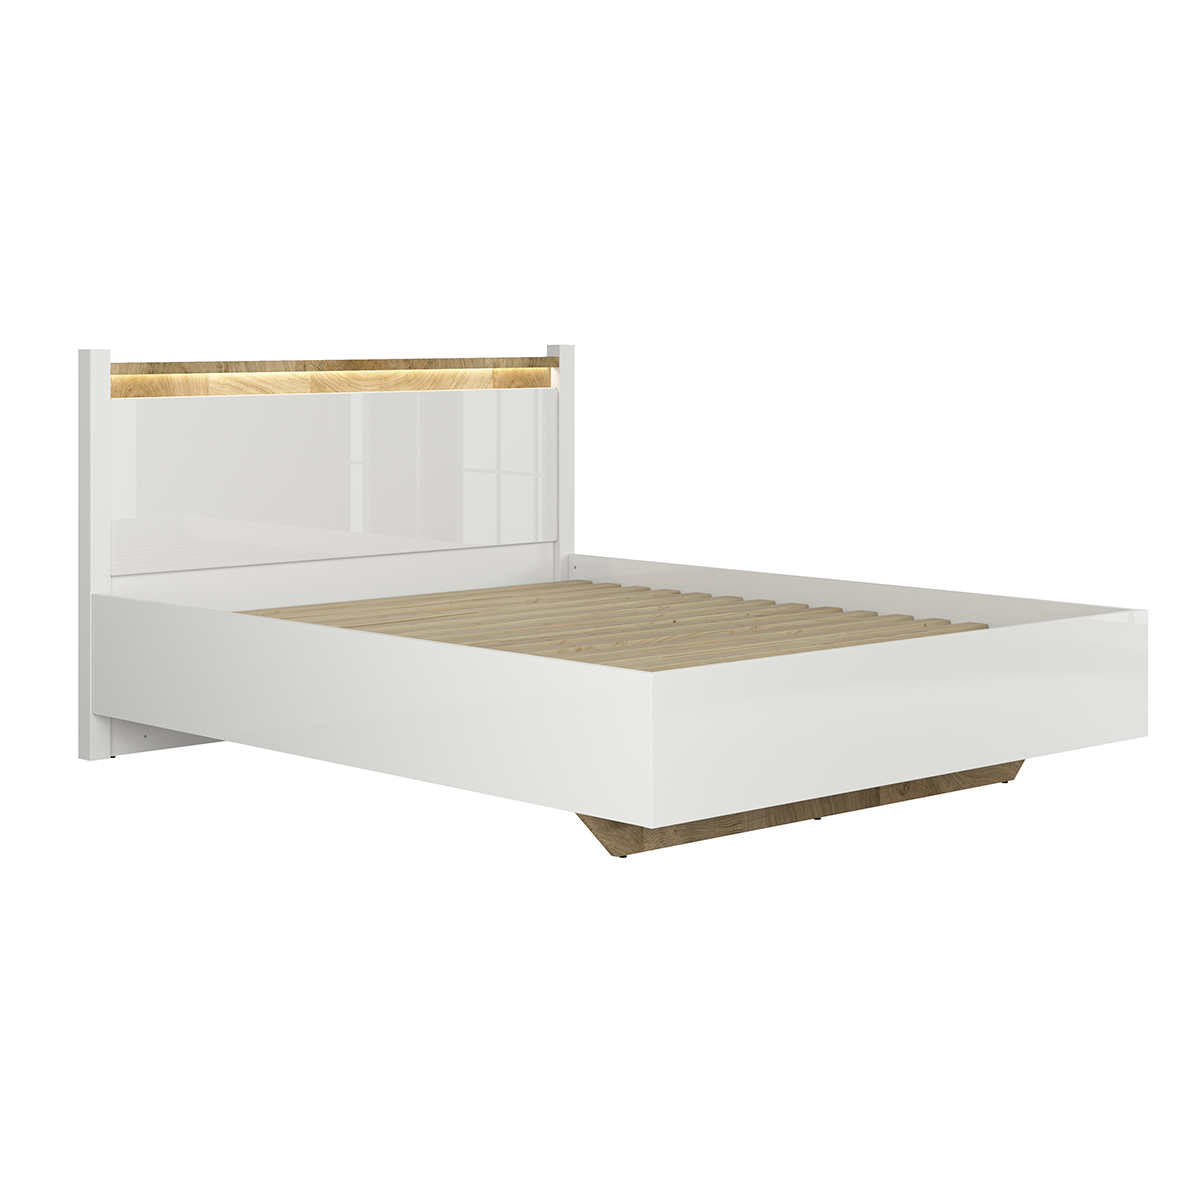 petits-meubles-S420-LOZ160A-BIP-DWM-helios-lit-160x200-blanc-bois-2